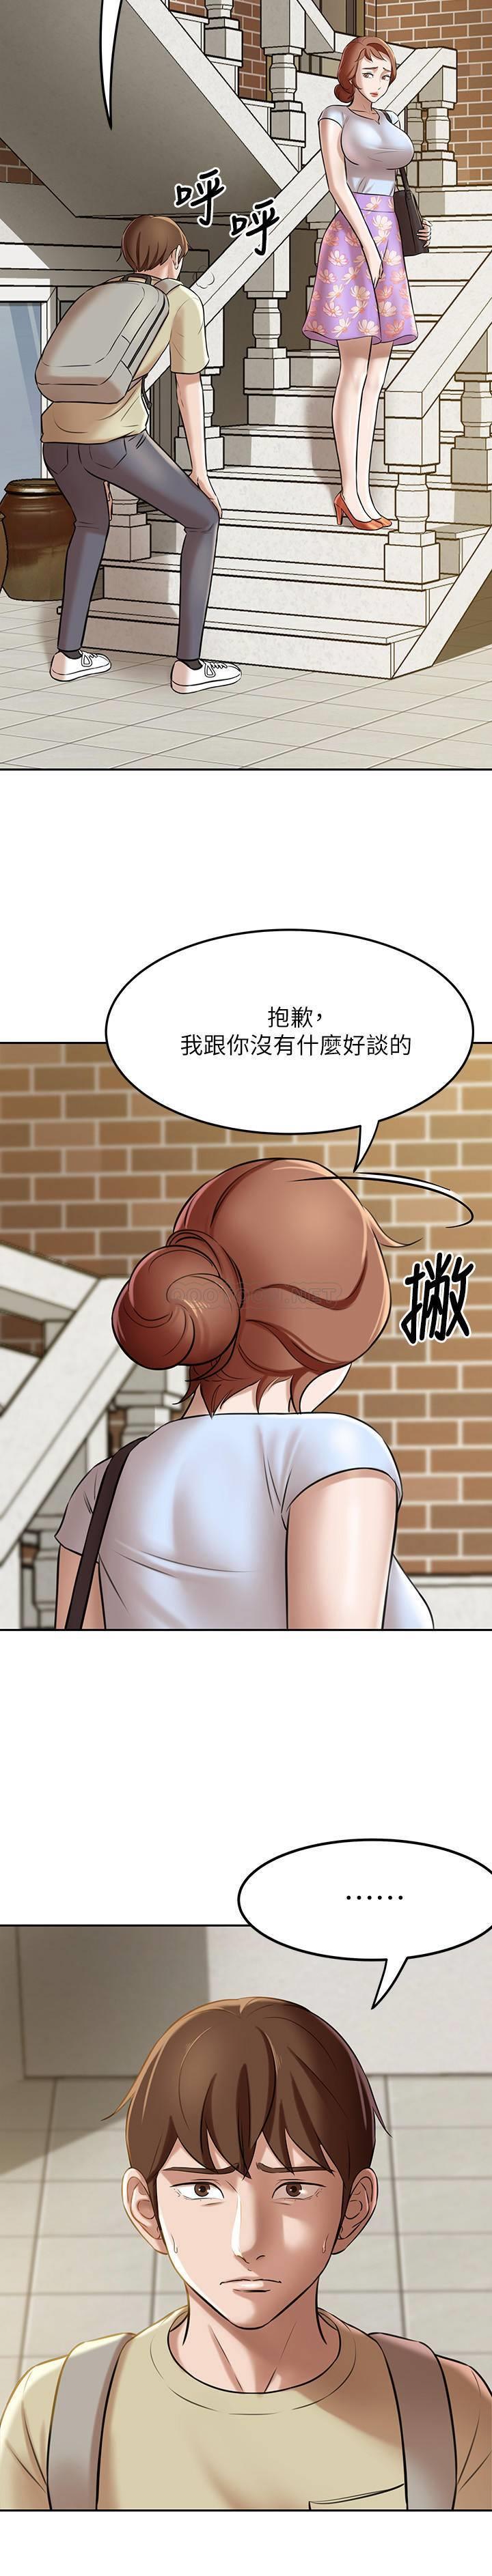 韩国污漫画 小褲褲筆記 第8话 - 阿姨为什么要躲我? 28